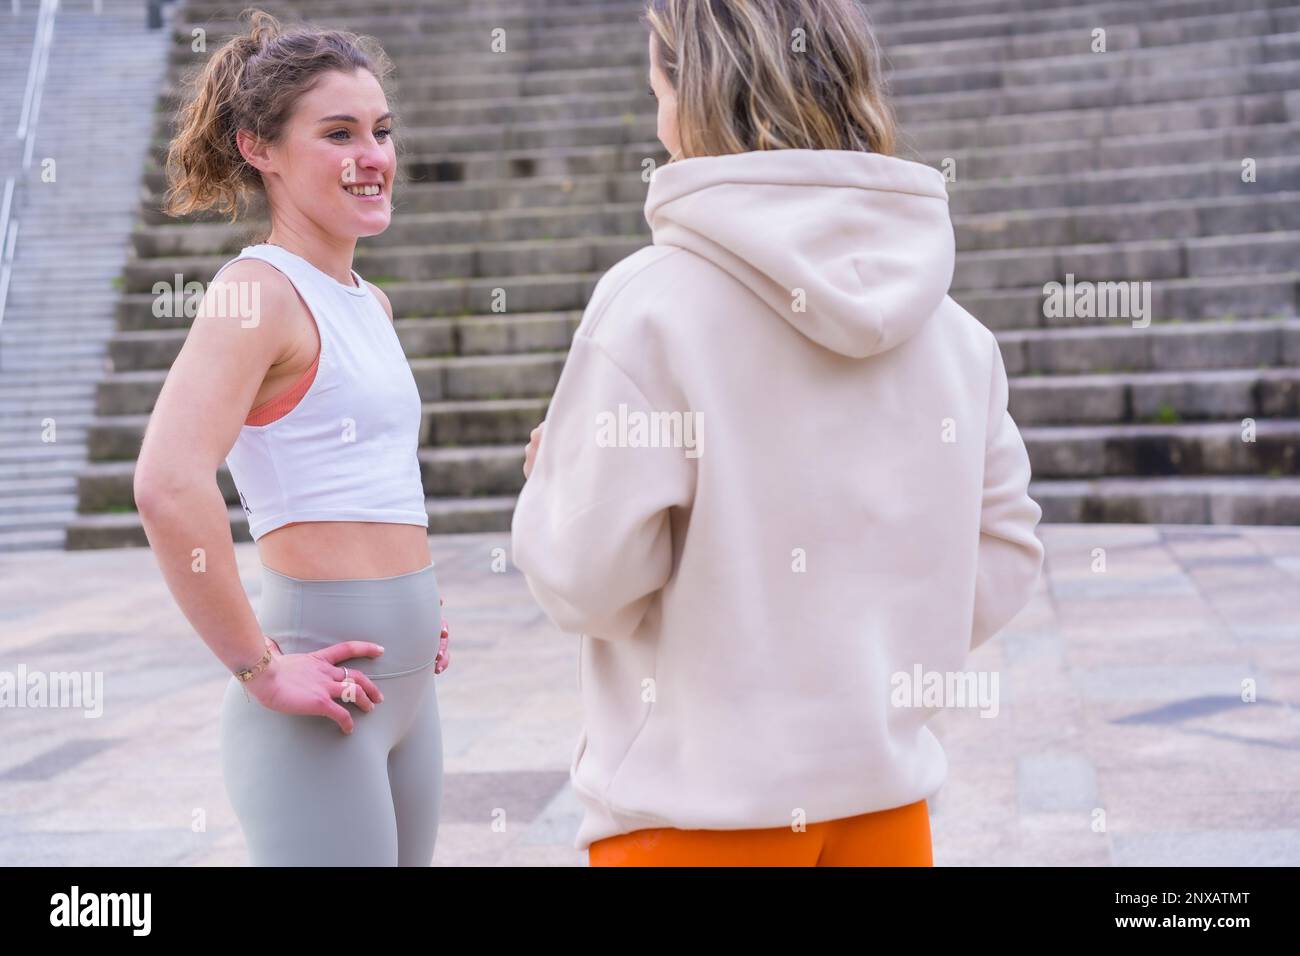 Zwei junge weiße Frauen, die sich unterhalten, während sie in einem Park stehen Stockfoto